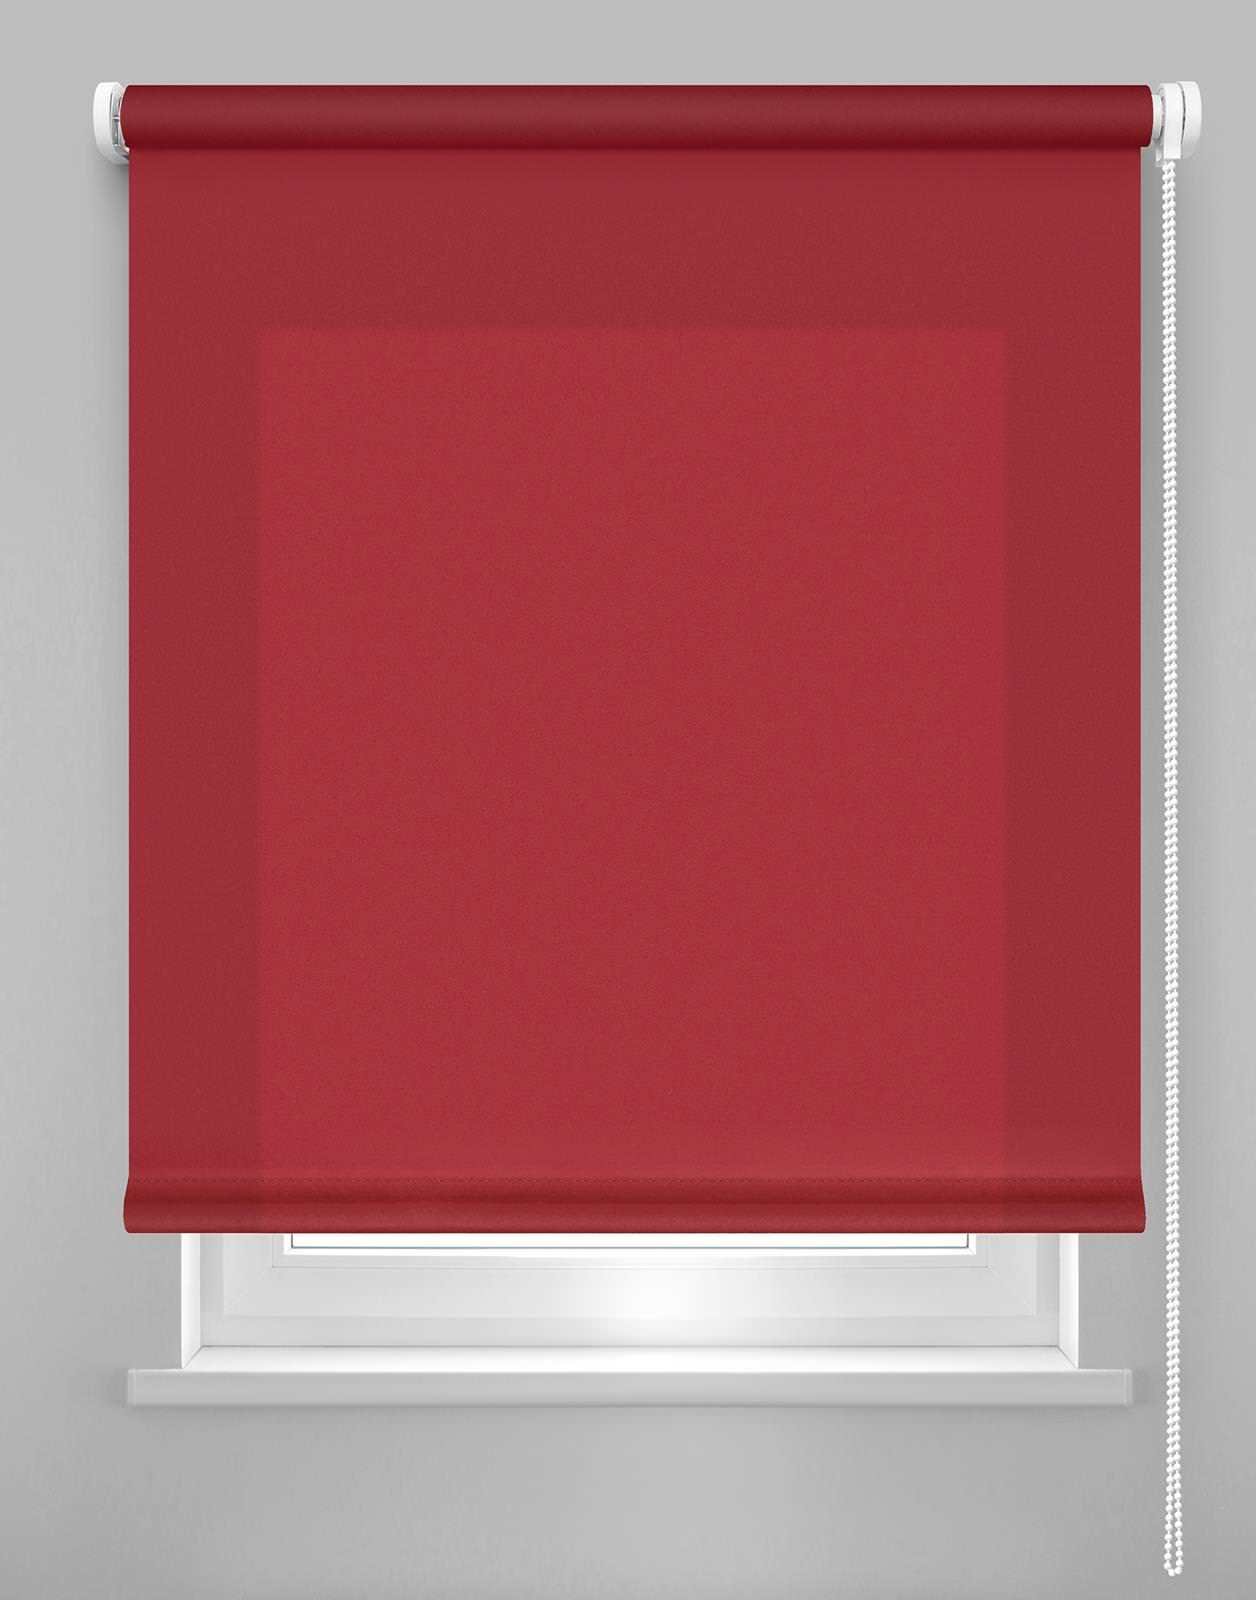 Klasikinė ritininė užuolaida DEKORIKA, raudonos sp., Ø 25 mm, 200 x 175 cm, 100 % PES